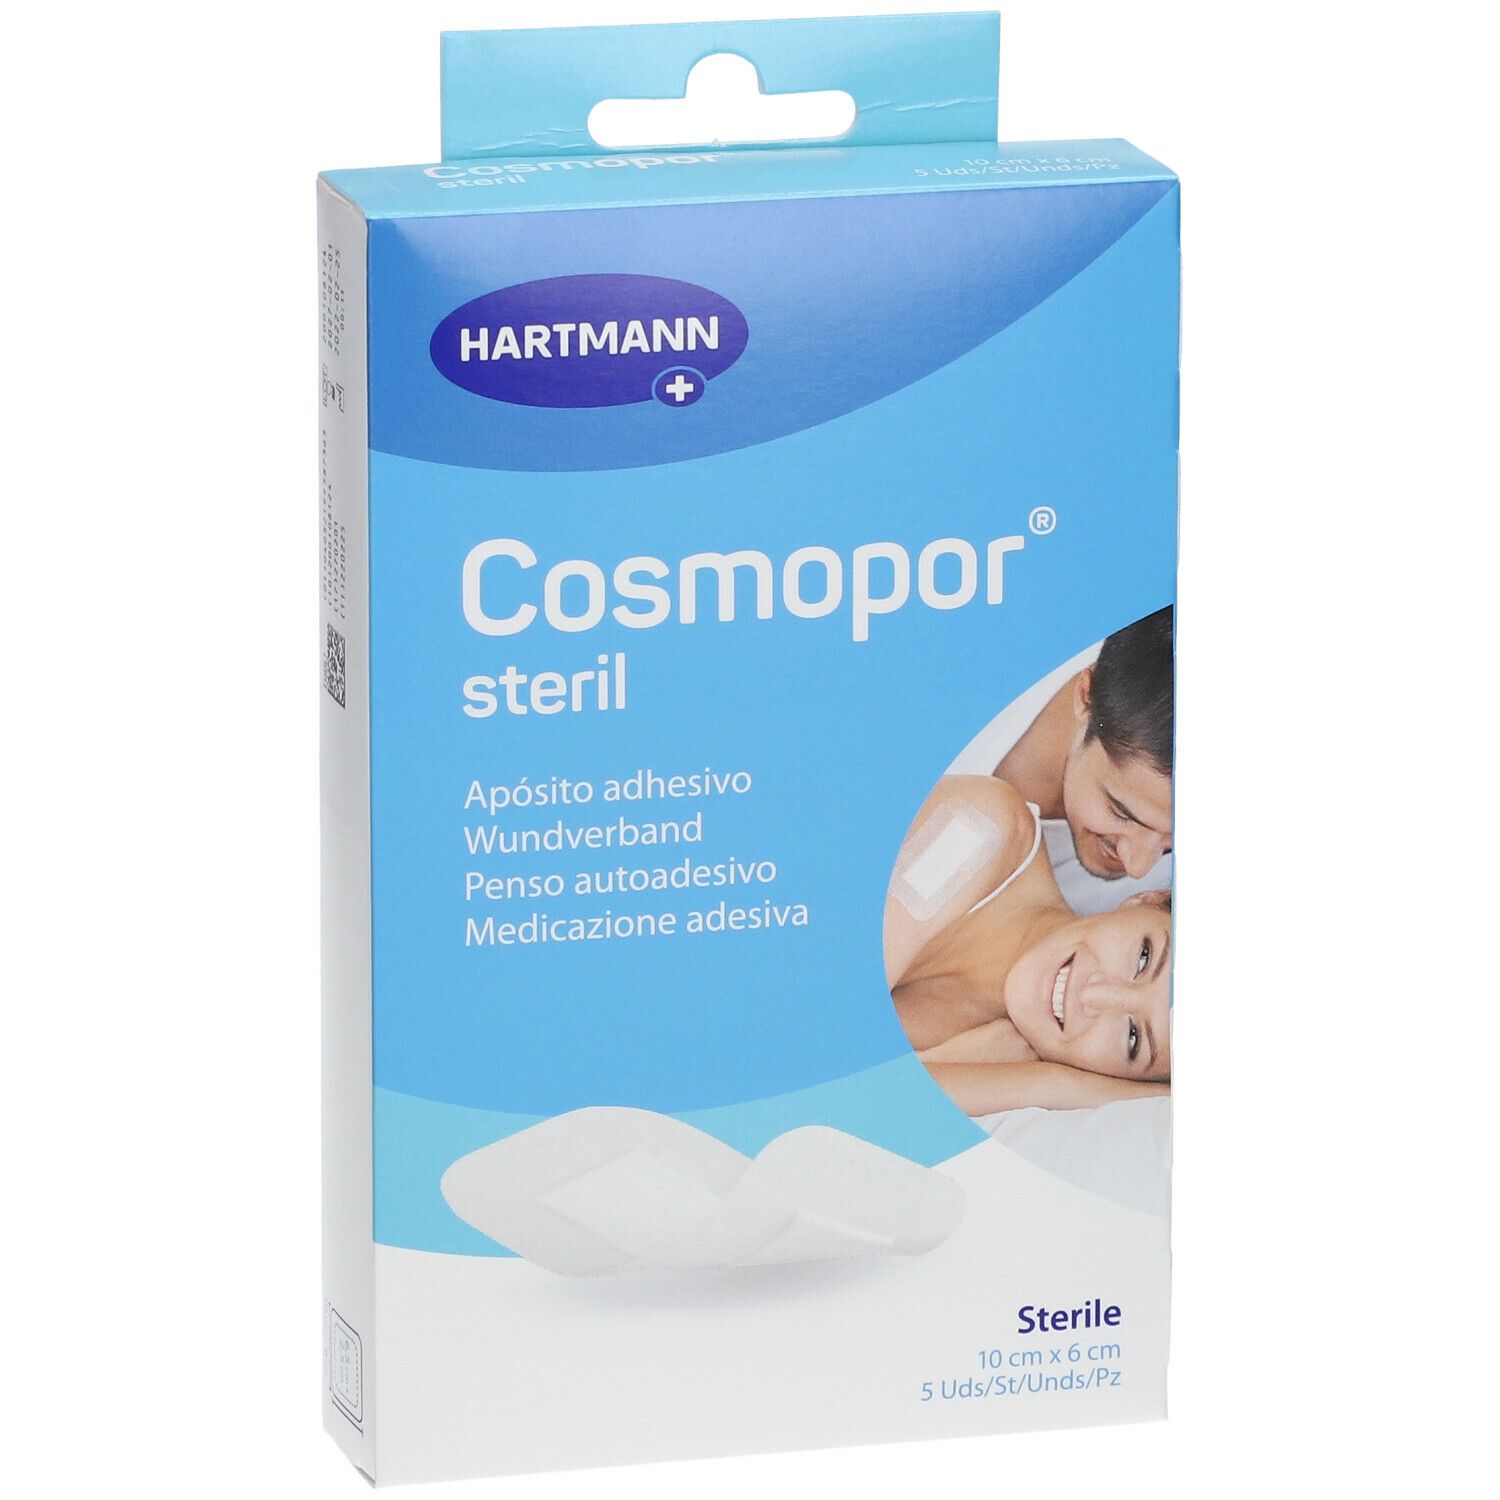 Cosmopor® steril 10 x 6 cm